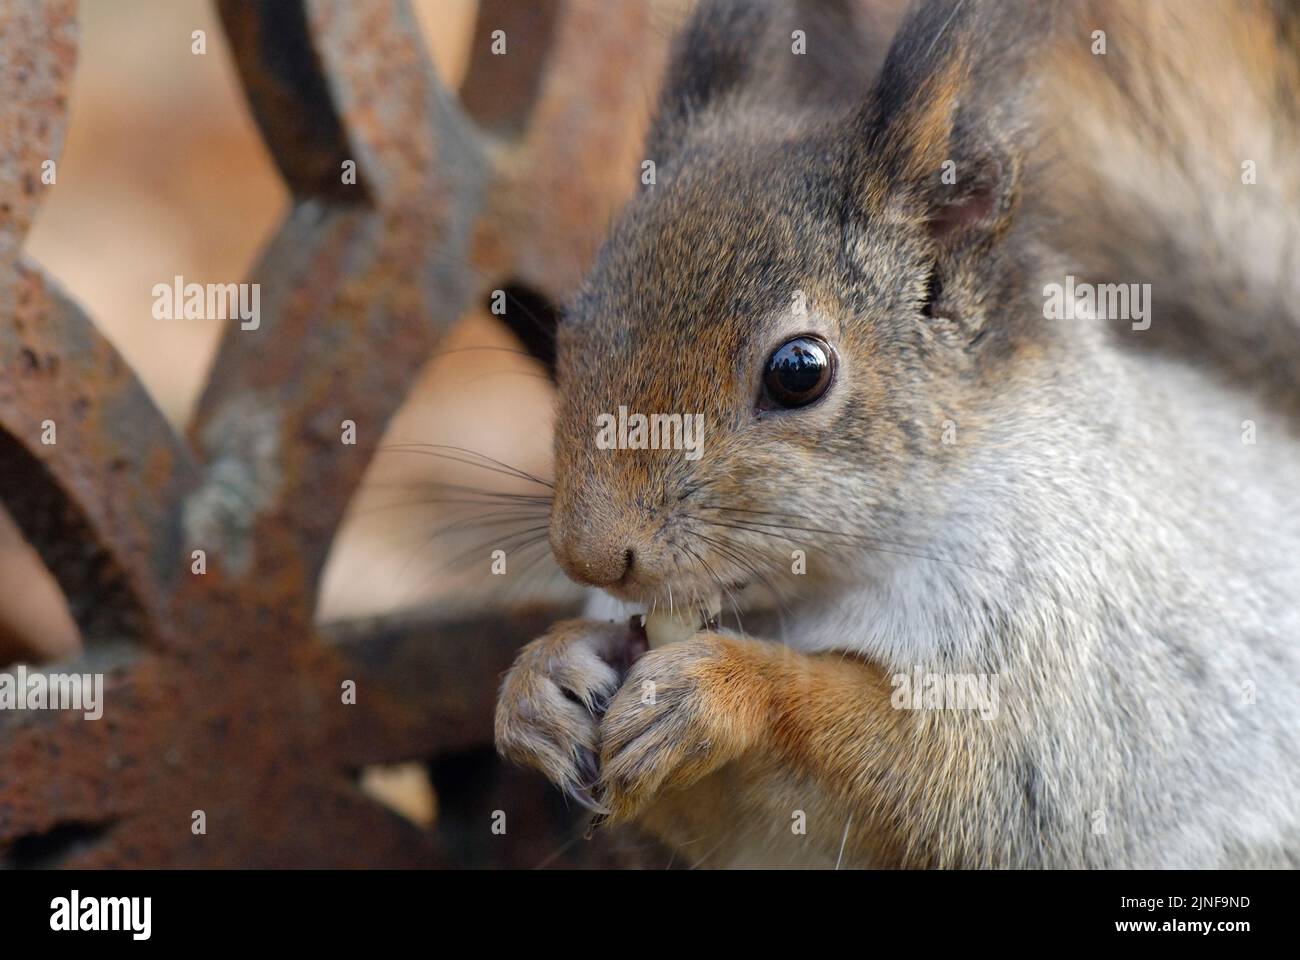 Red squirrel (Sciurus vulgaris) eating a peanut Stock Photo